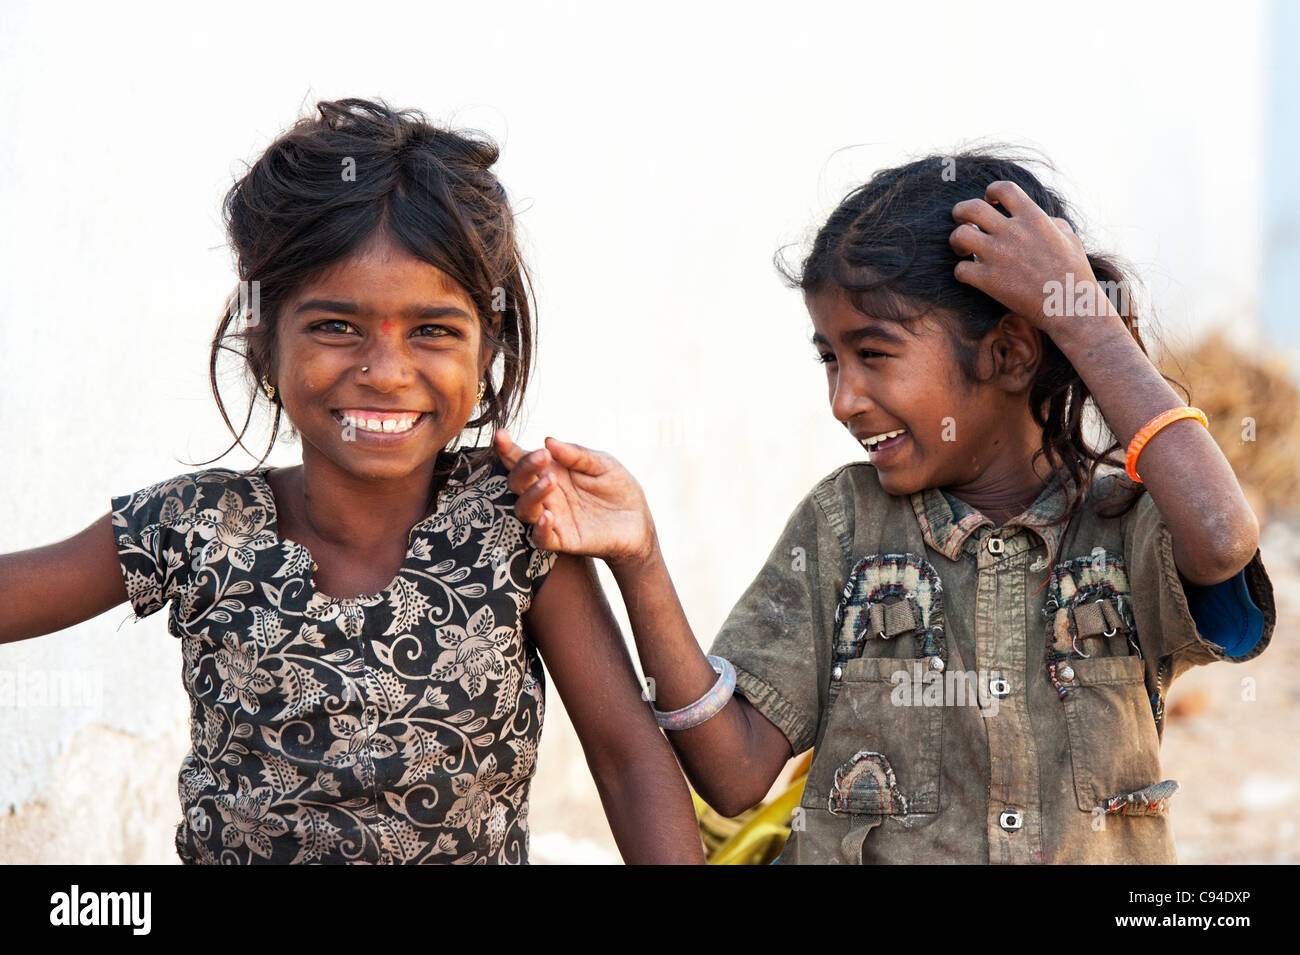 Poor Indian nomadic beggar girls having fun laughing in an indian street Stock Photo